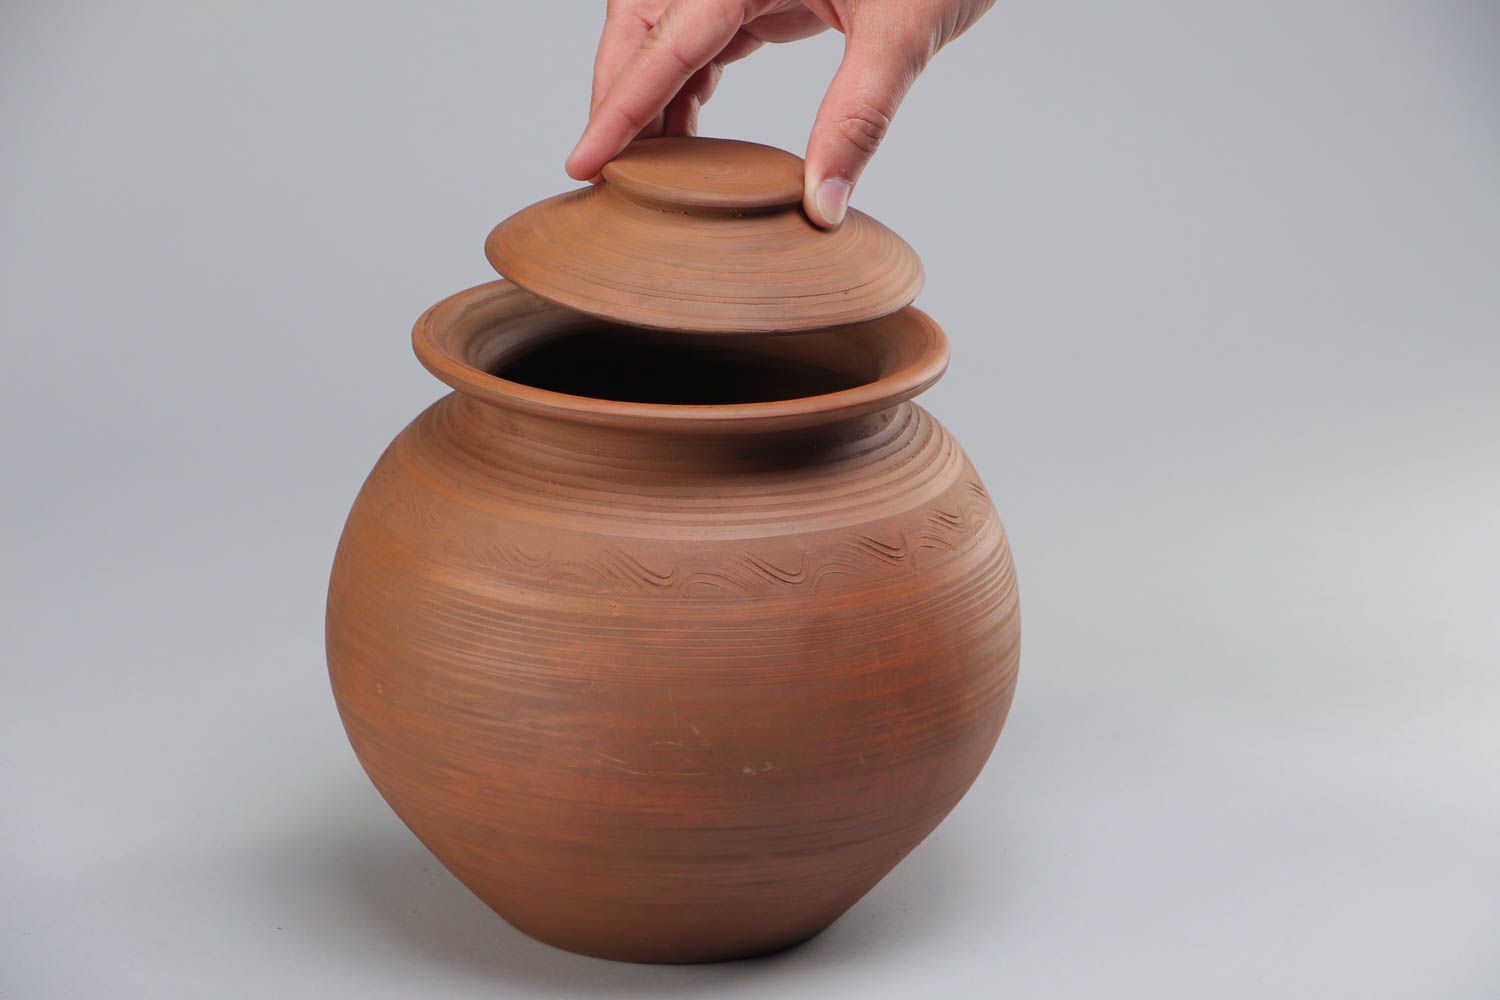 Handmade Keramik Schmortopf aus Ton 3 L in Milchbrennen Technik mit Deckel schön foto 5